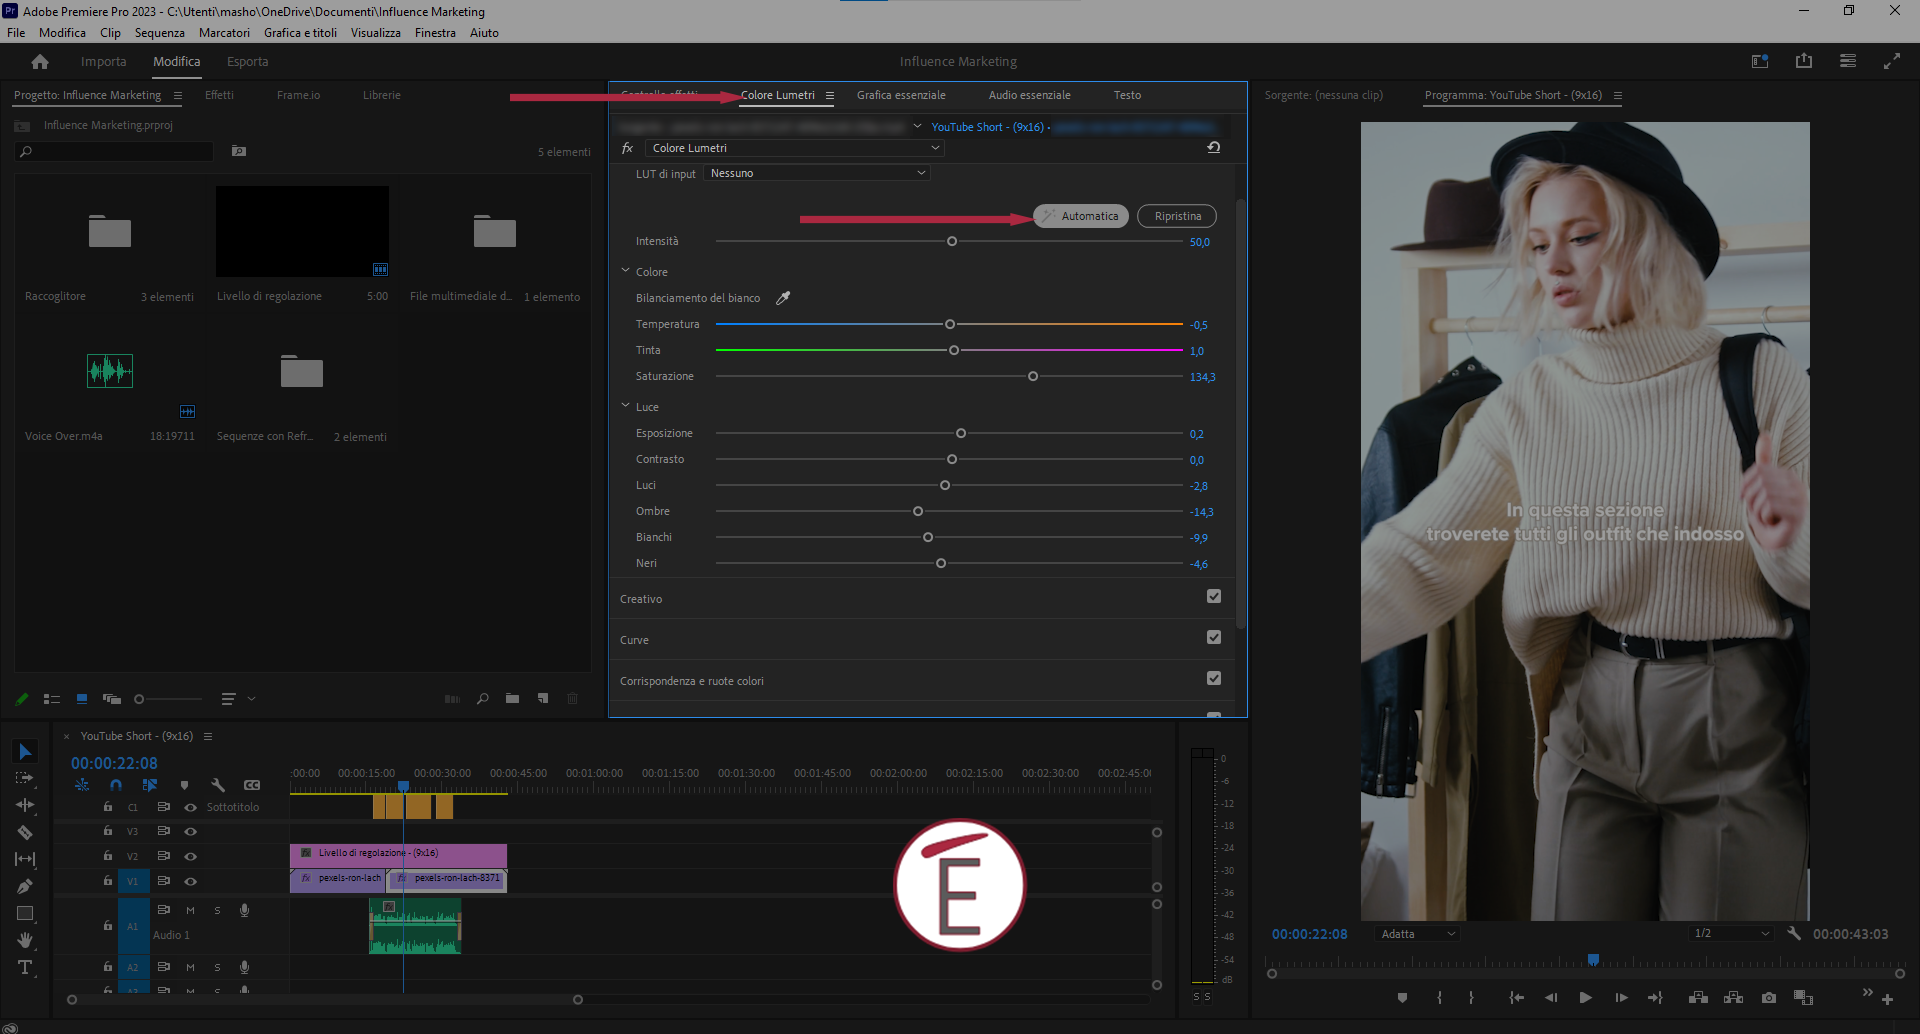 Corregere toni e colori di un video in Premiere Pro è semplicissimo usando la funzione Automatica nel pannello di Colore Lumetri